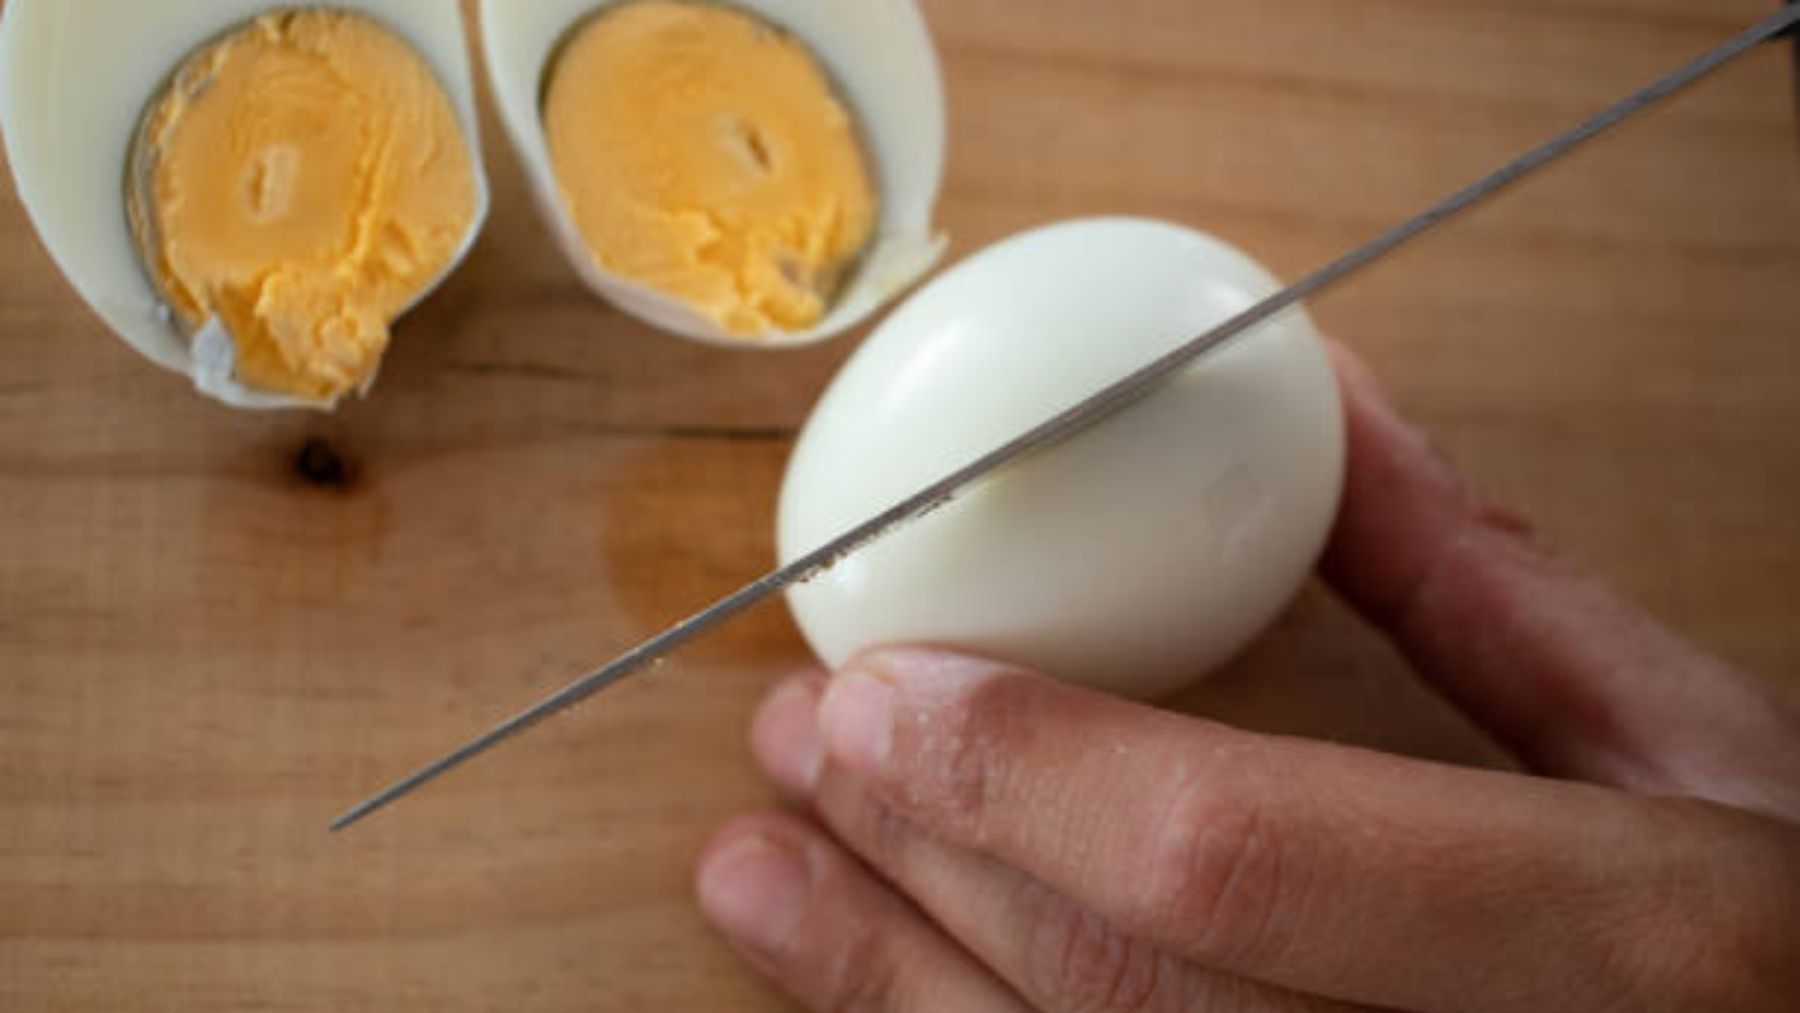 El truco de los profesionales para cocer huevos y que queden